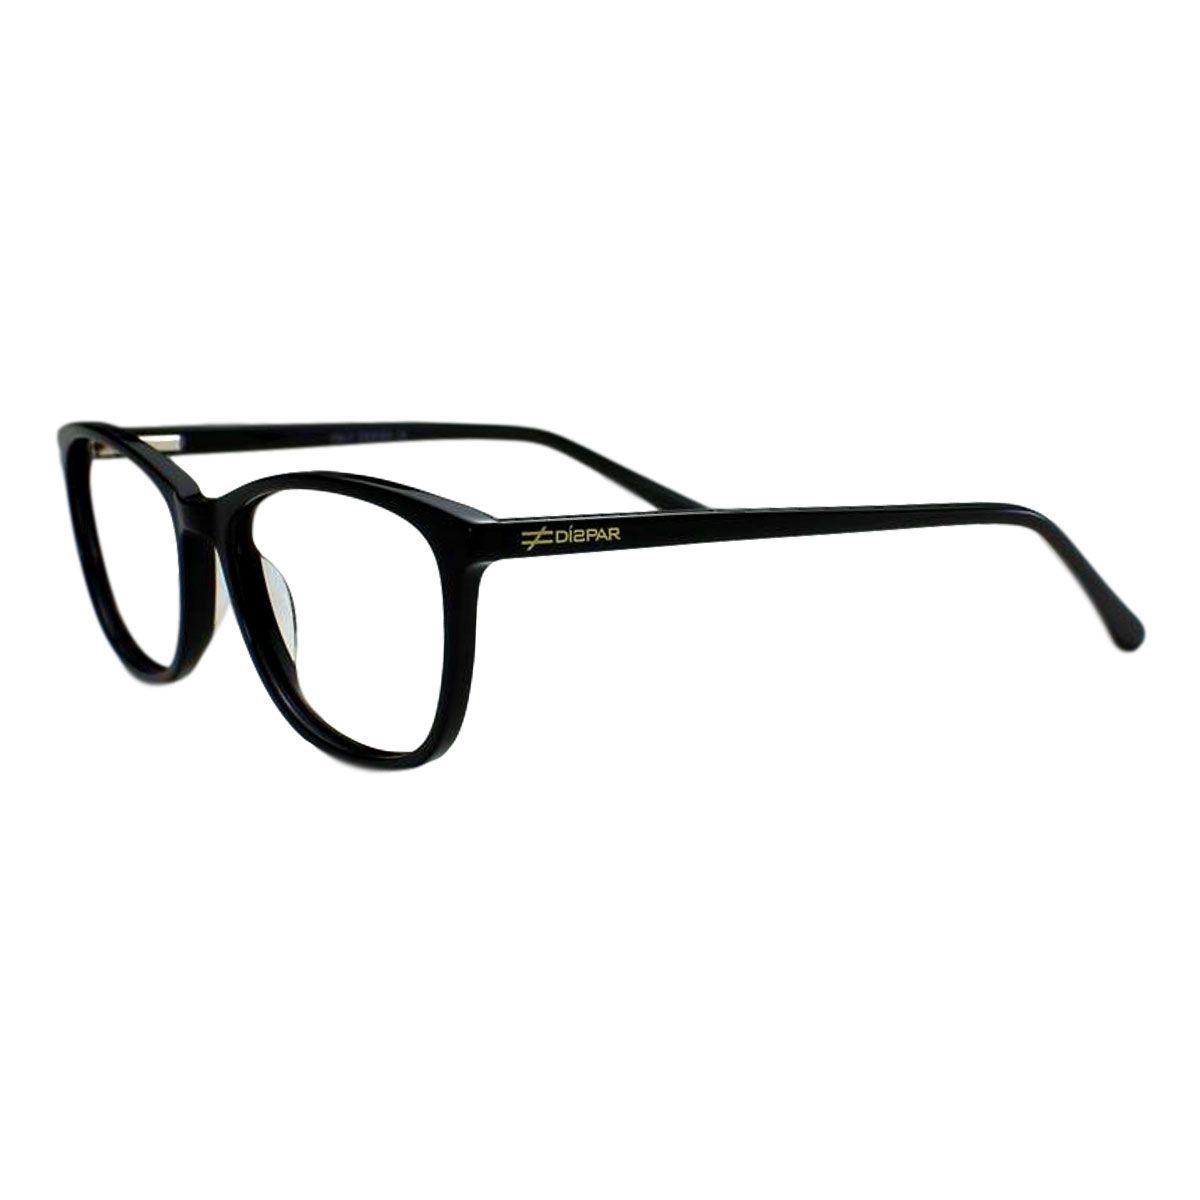  Armação para Óculos Díspar D2013 Acetato - Preto